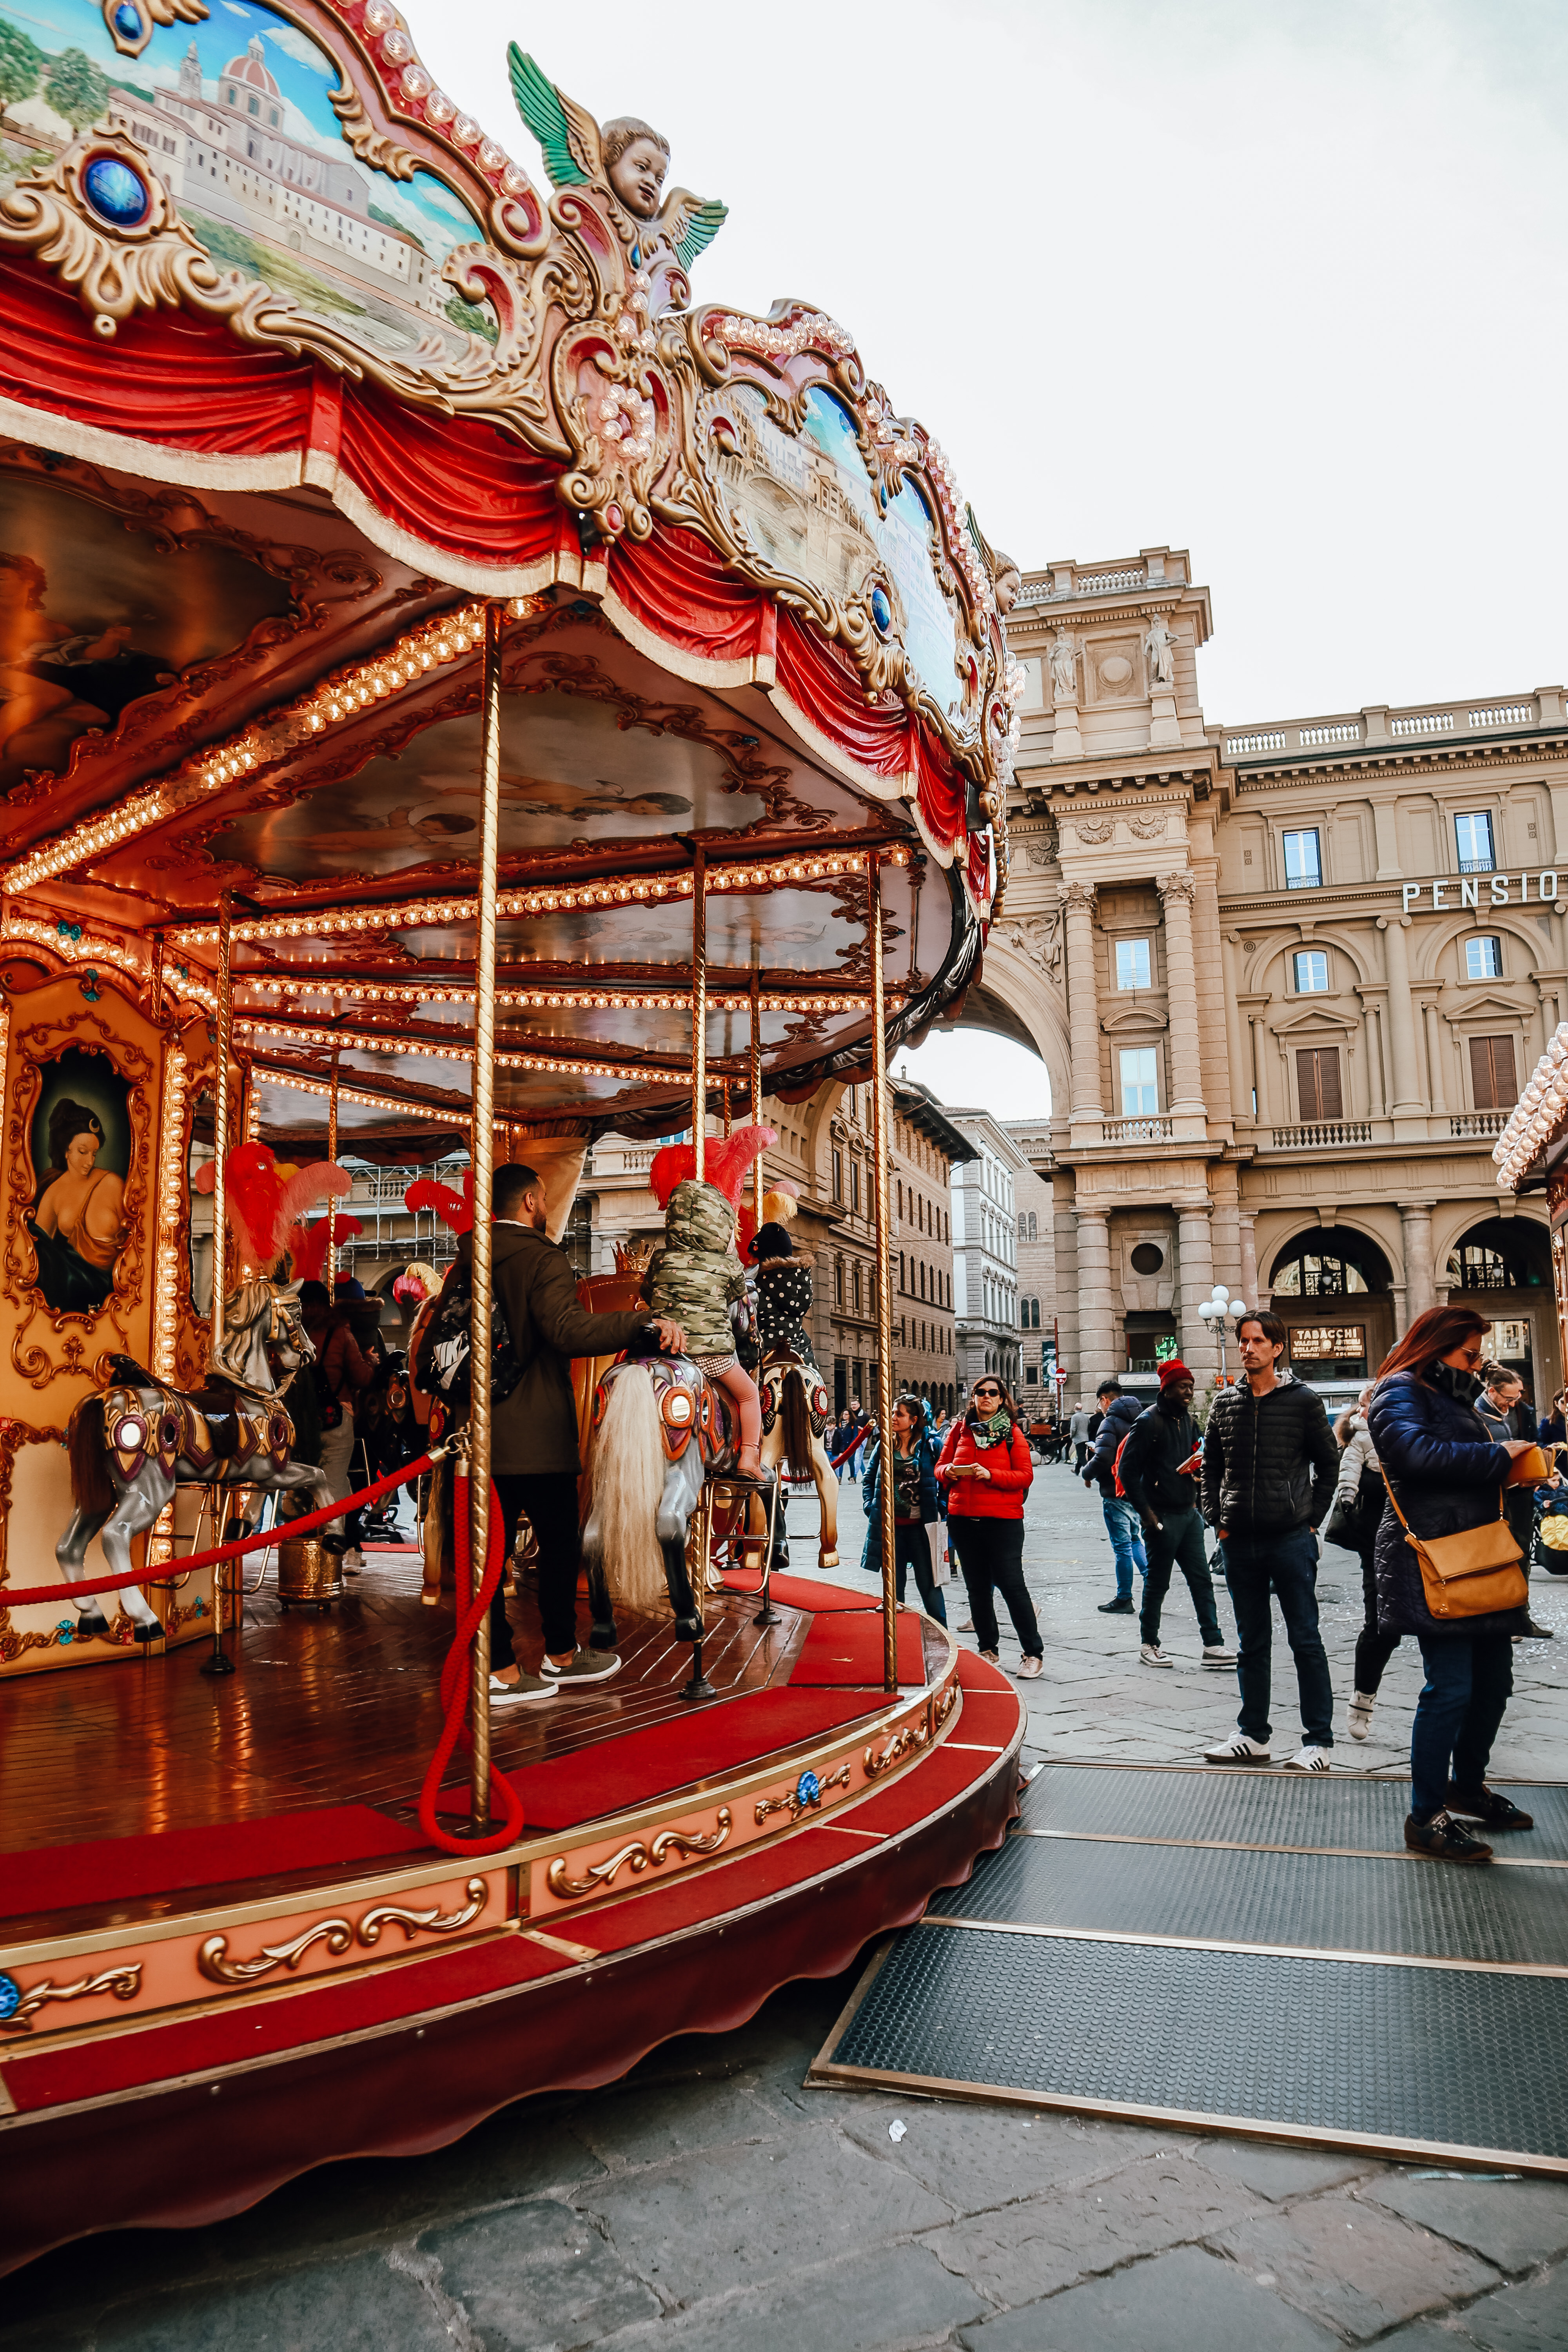 Carousel in Piazza della Repubblica, Florence, Italy